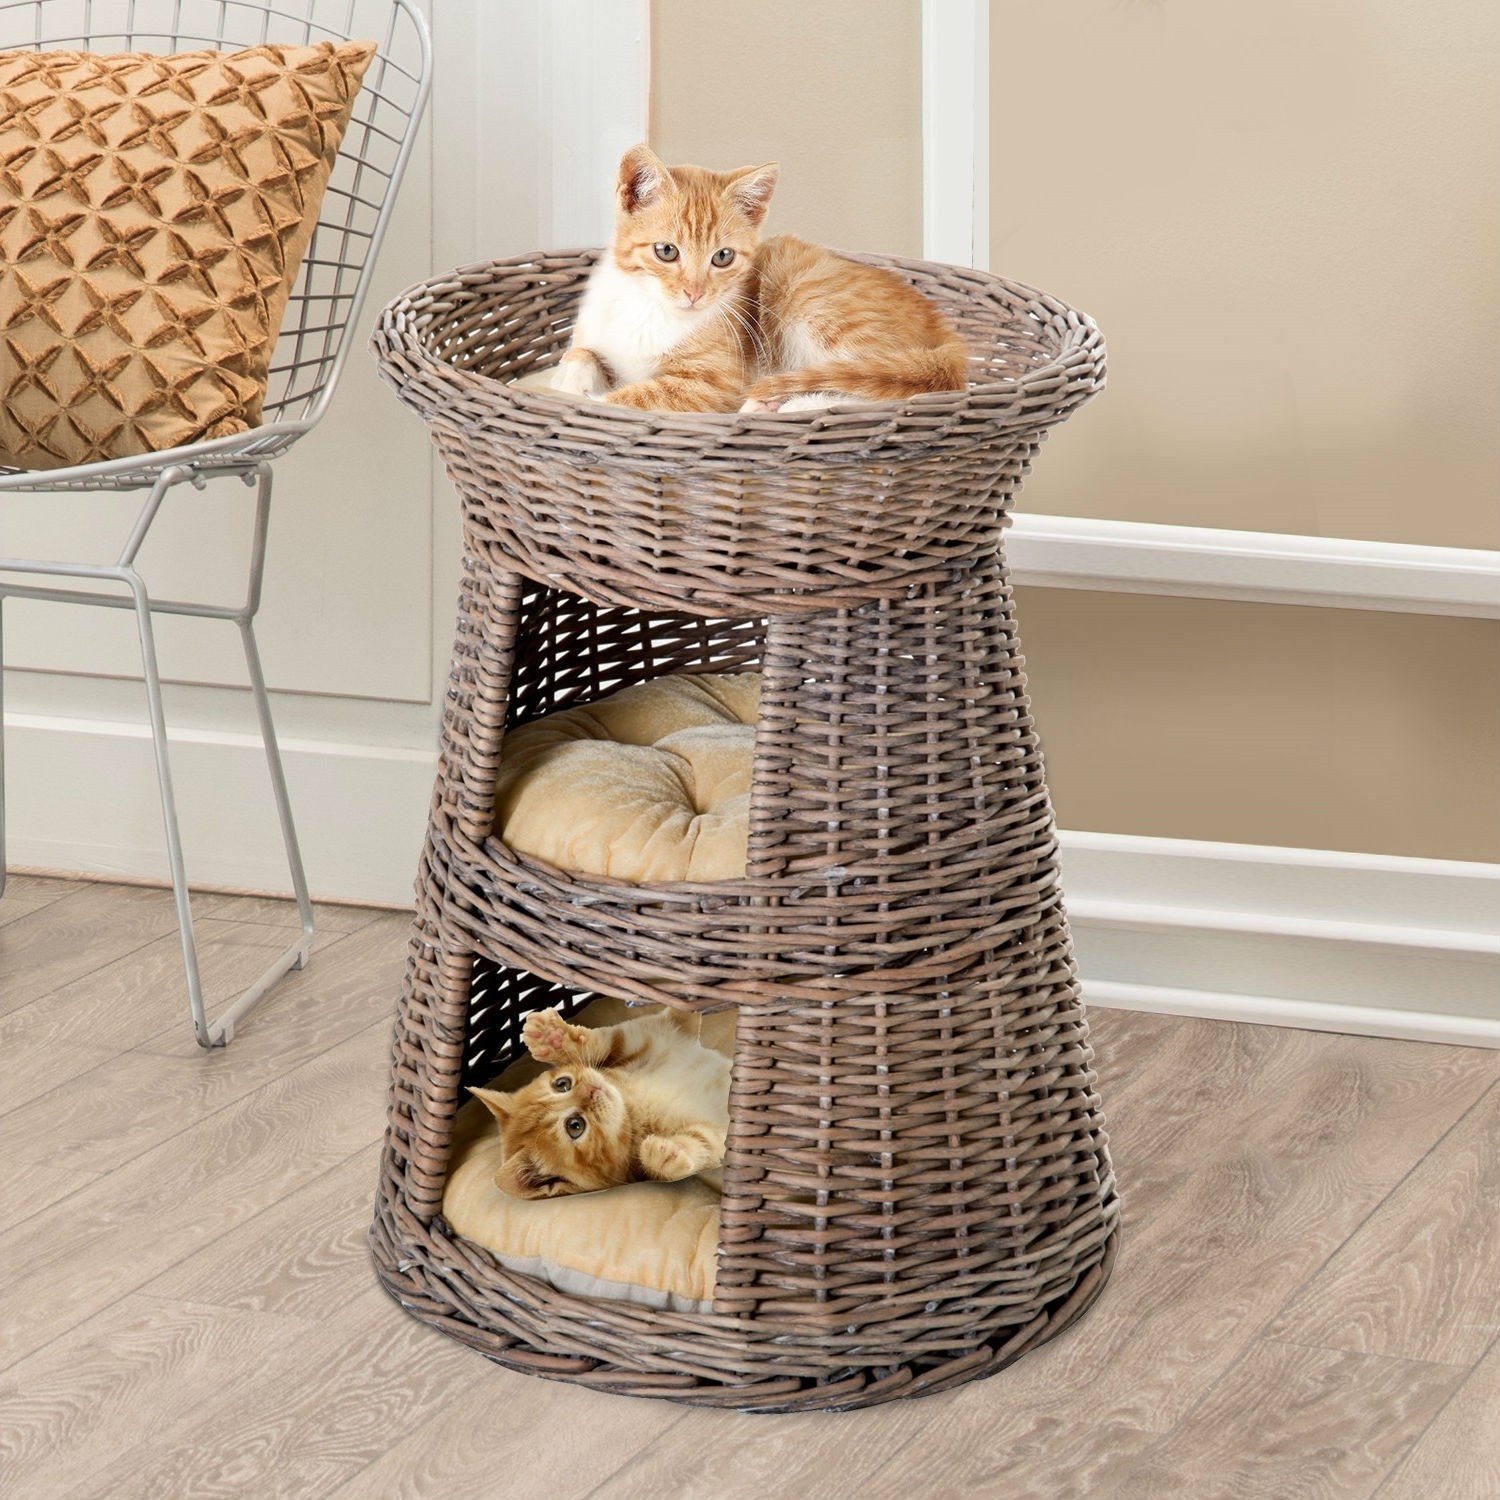 Eco friendly 3 tier round rattan wicker elevated cat condo